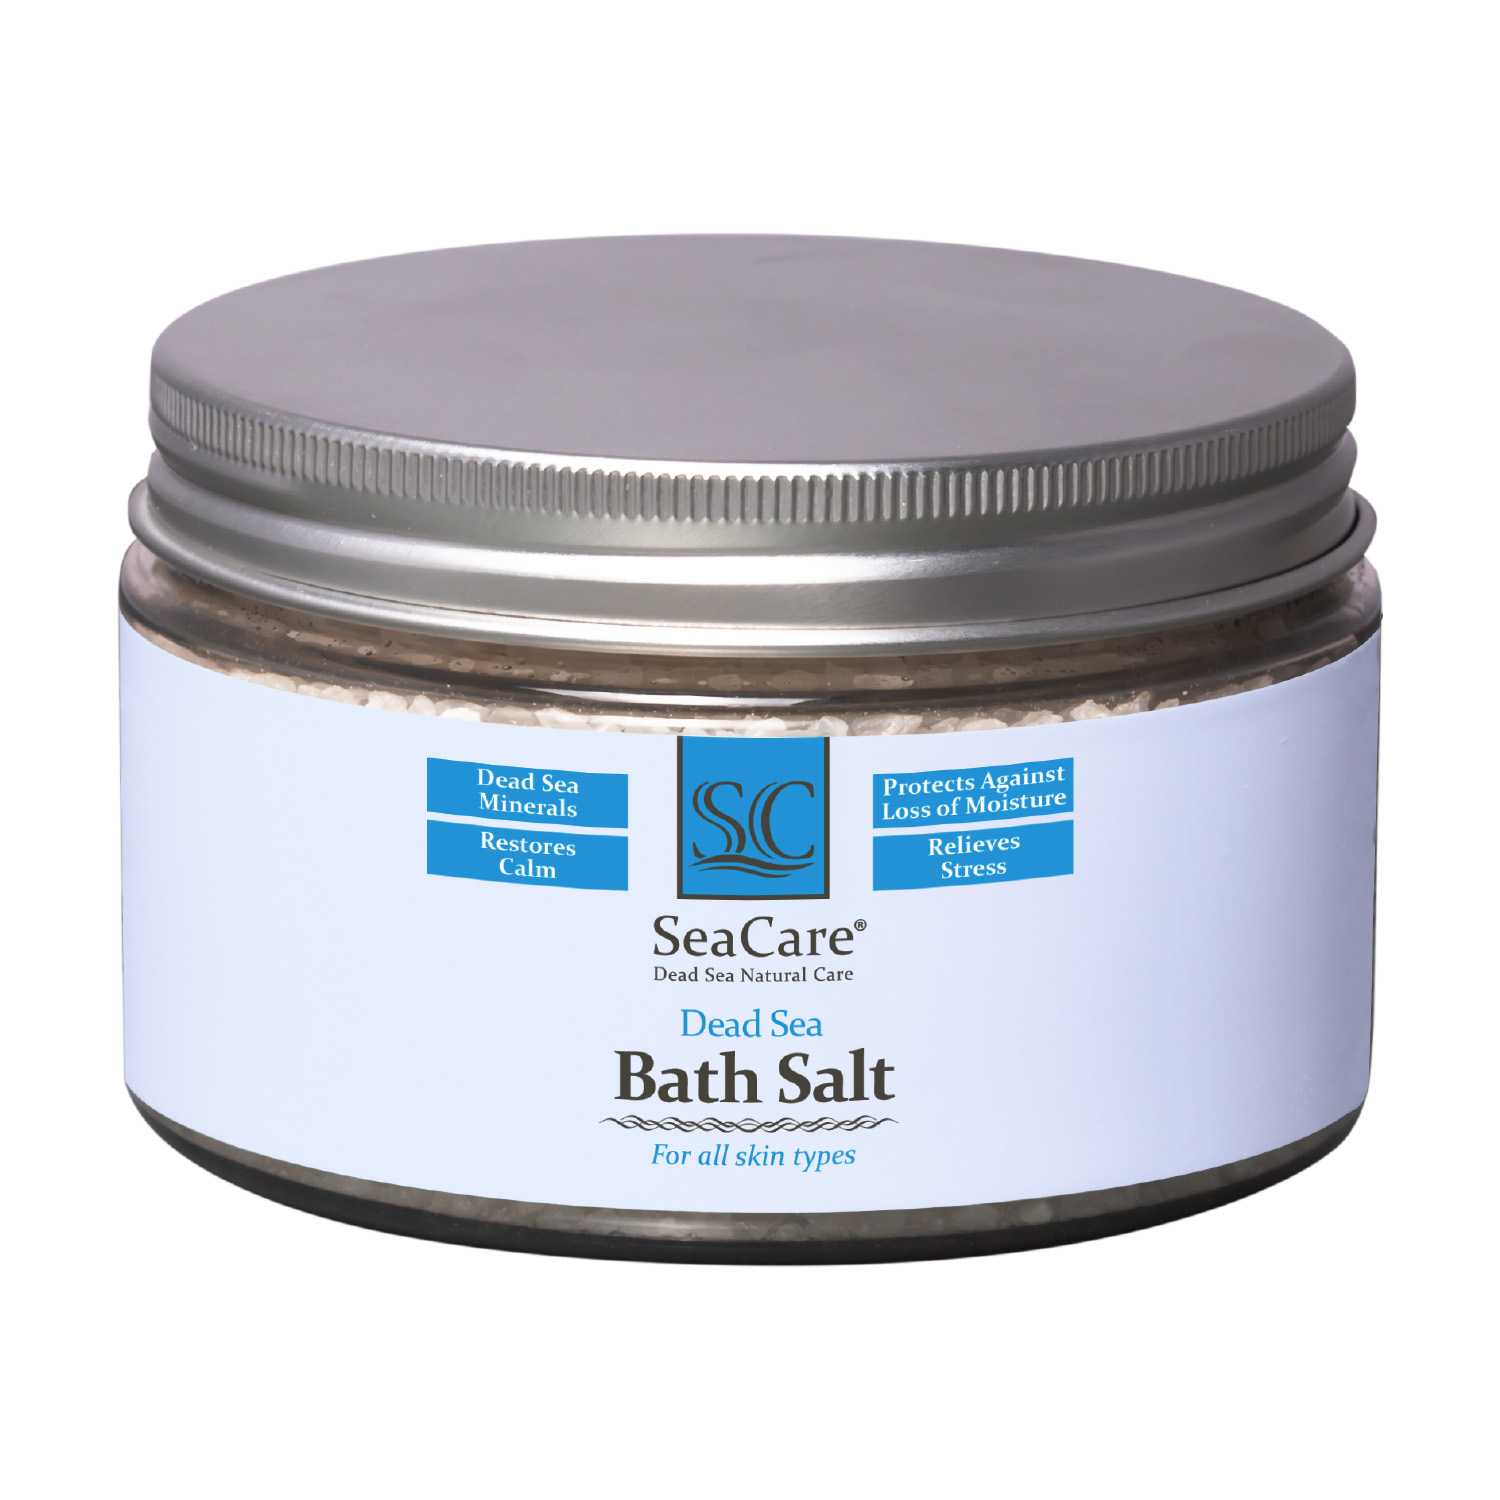 Соль для ванны SeaCare с минералами мертвого моря 300 г beauty fox расслабляющая соль для ванны время думать о себе 370